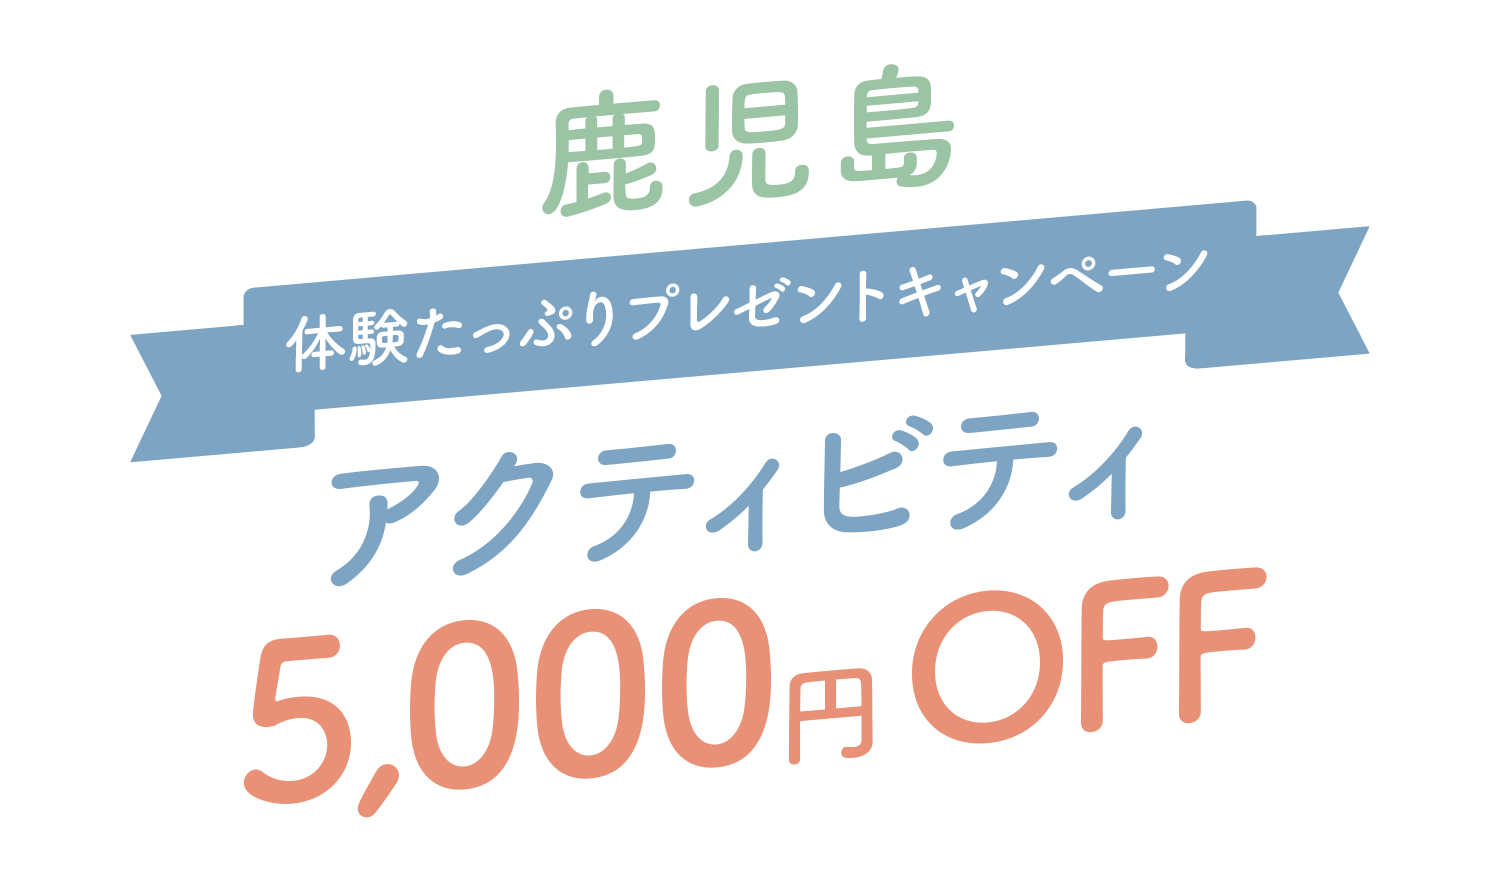 鹿児島体験たっぷりキャンペーンアクティビティ5,000円OFF